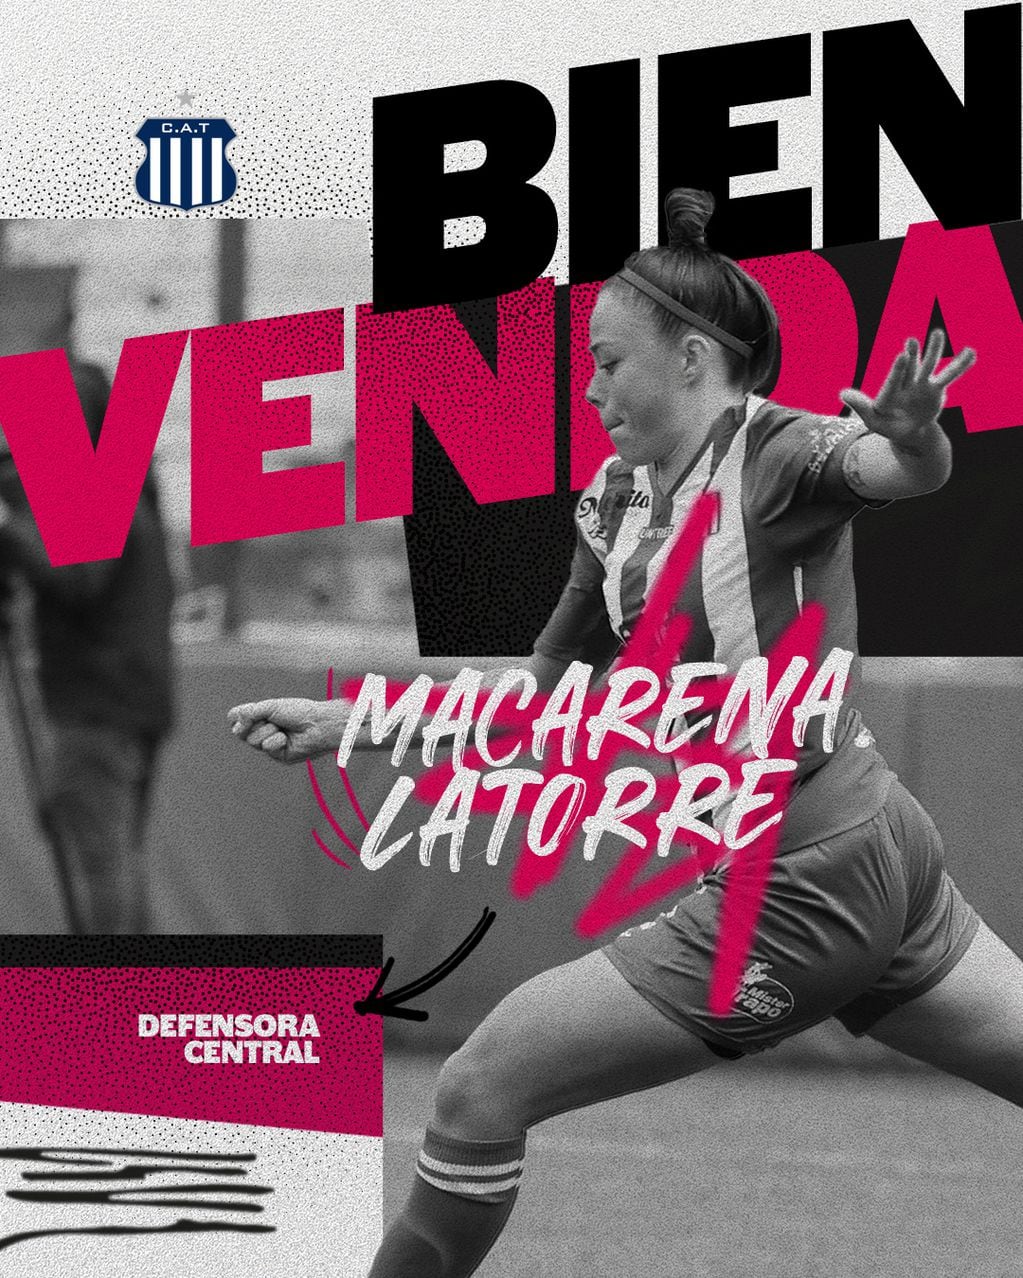 Macarena Latorre y el anuncio de su arribo a Talleres para reforzar el equipo dirigido por Miqueas Russo que buscará el ascenso a Primera División